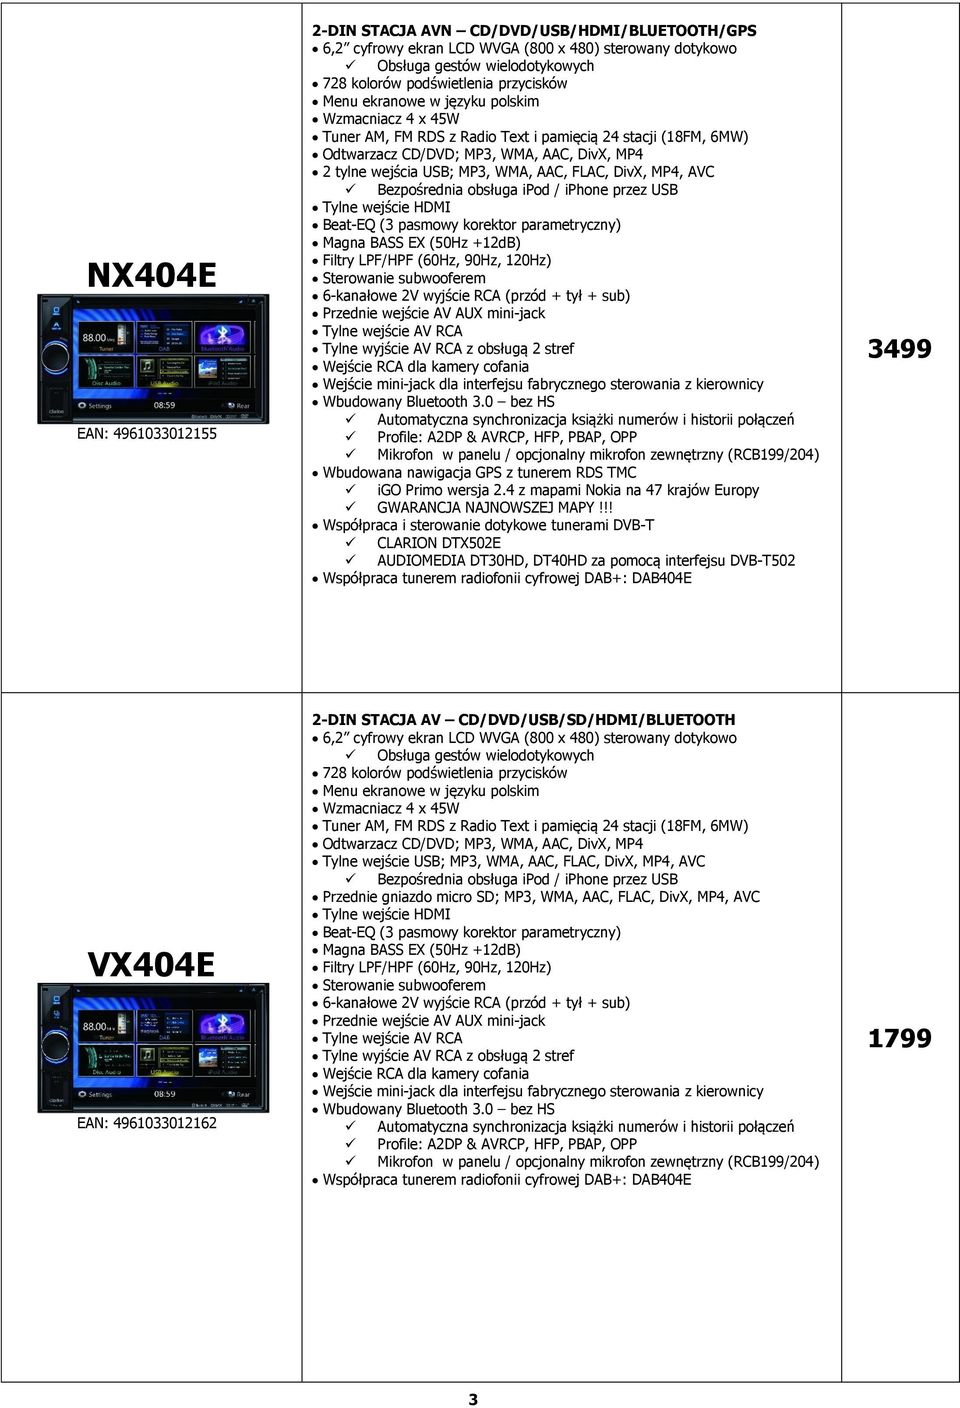 DivX, MP4, AVC Tylne wejście HDMI Beat-EQ (3 pasmowy korektor parametryczny) Magna BASS EX (50Hz +12dB) 6-kanałowe 2V wyjście RCA (przód + tył + sub) Przednie wejście AV AUX mini-jack Tylne wejście